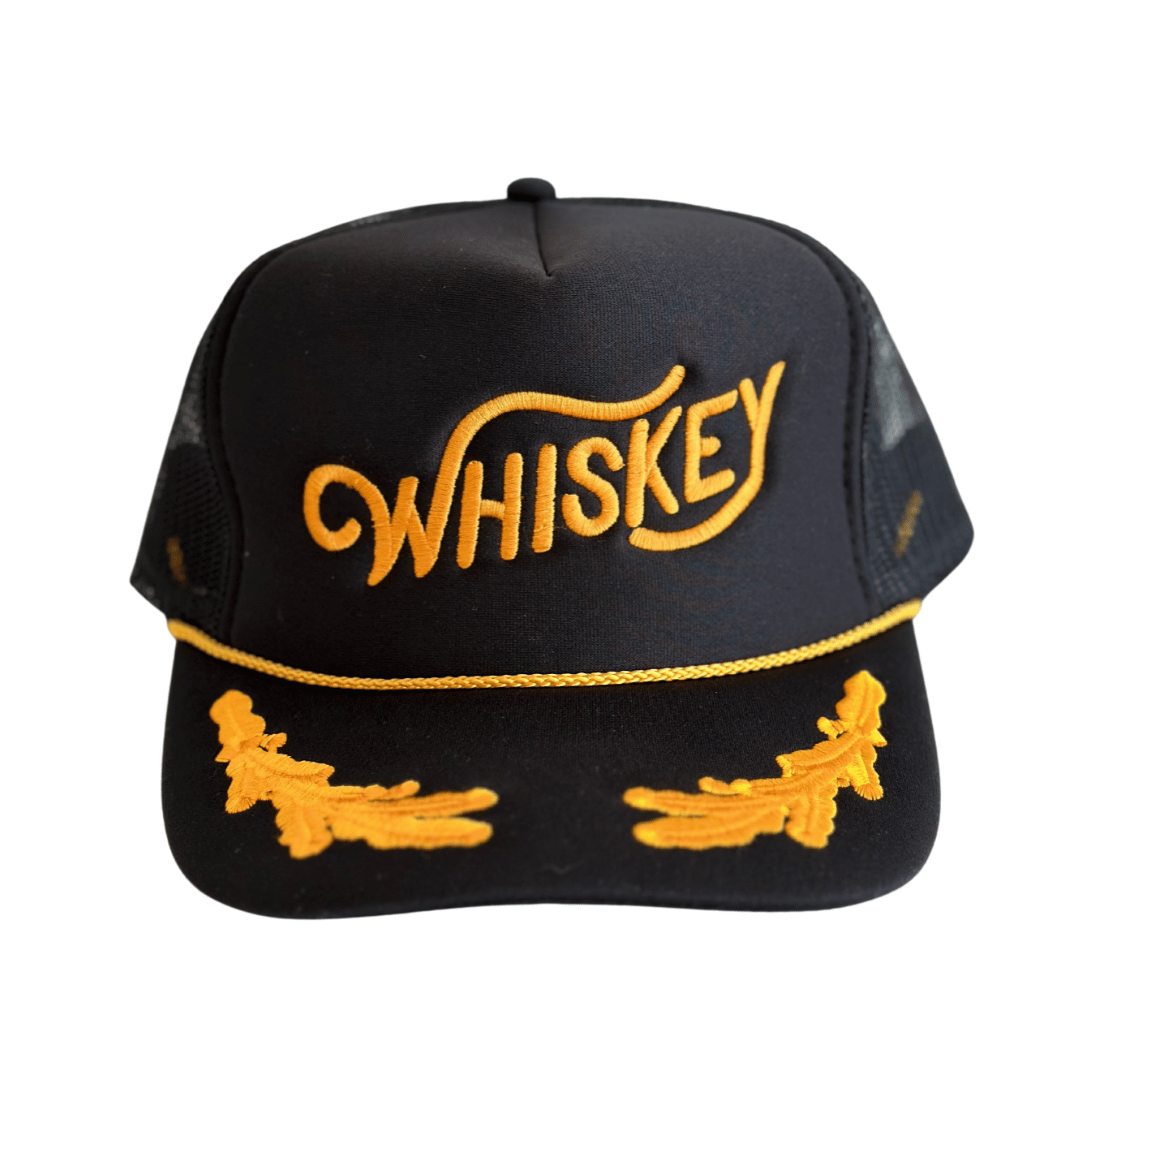 Whiskey Trucker Hat